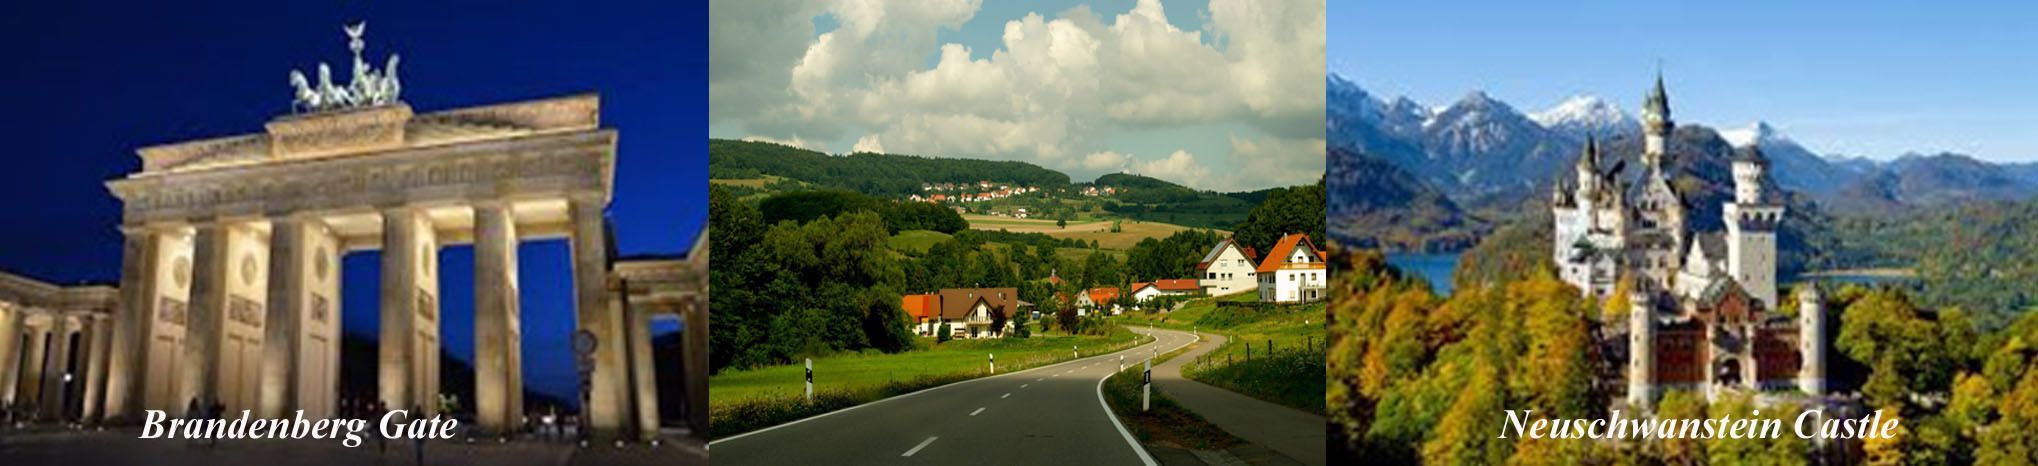 Landmarks in Germany